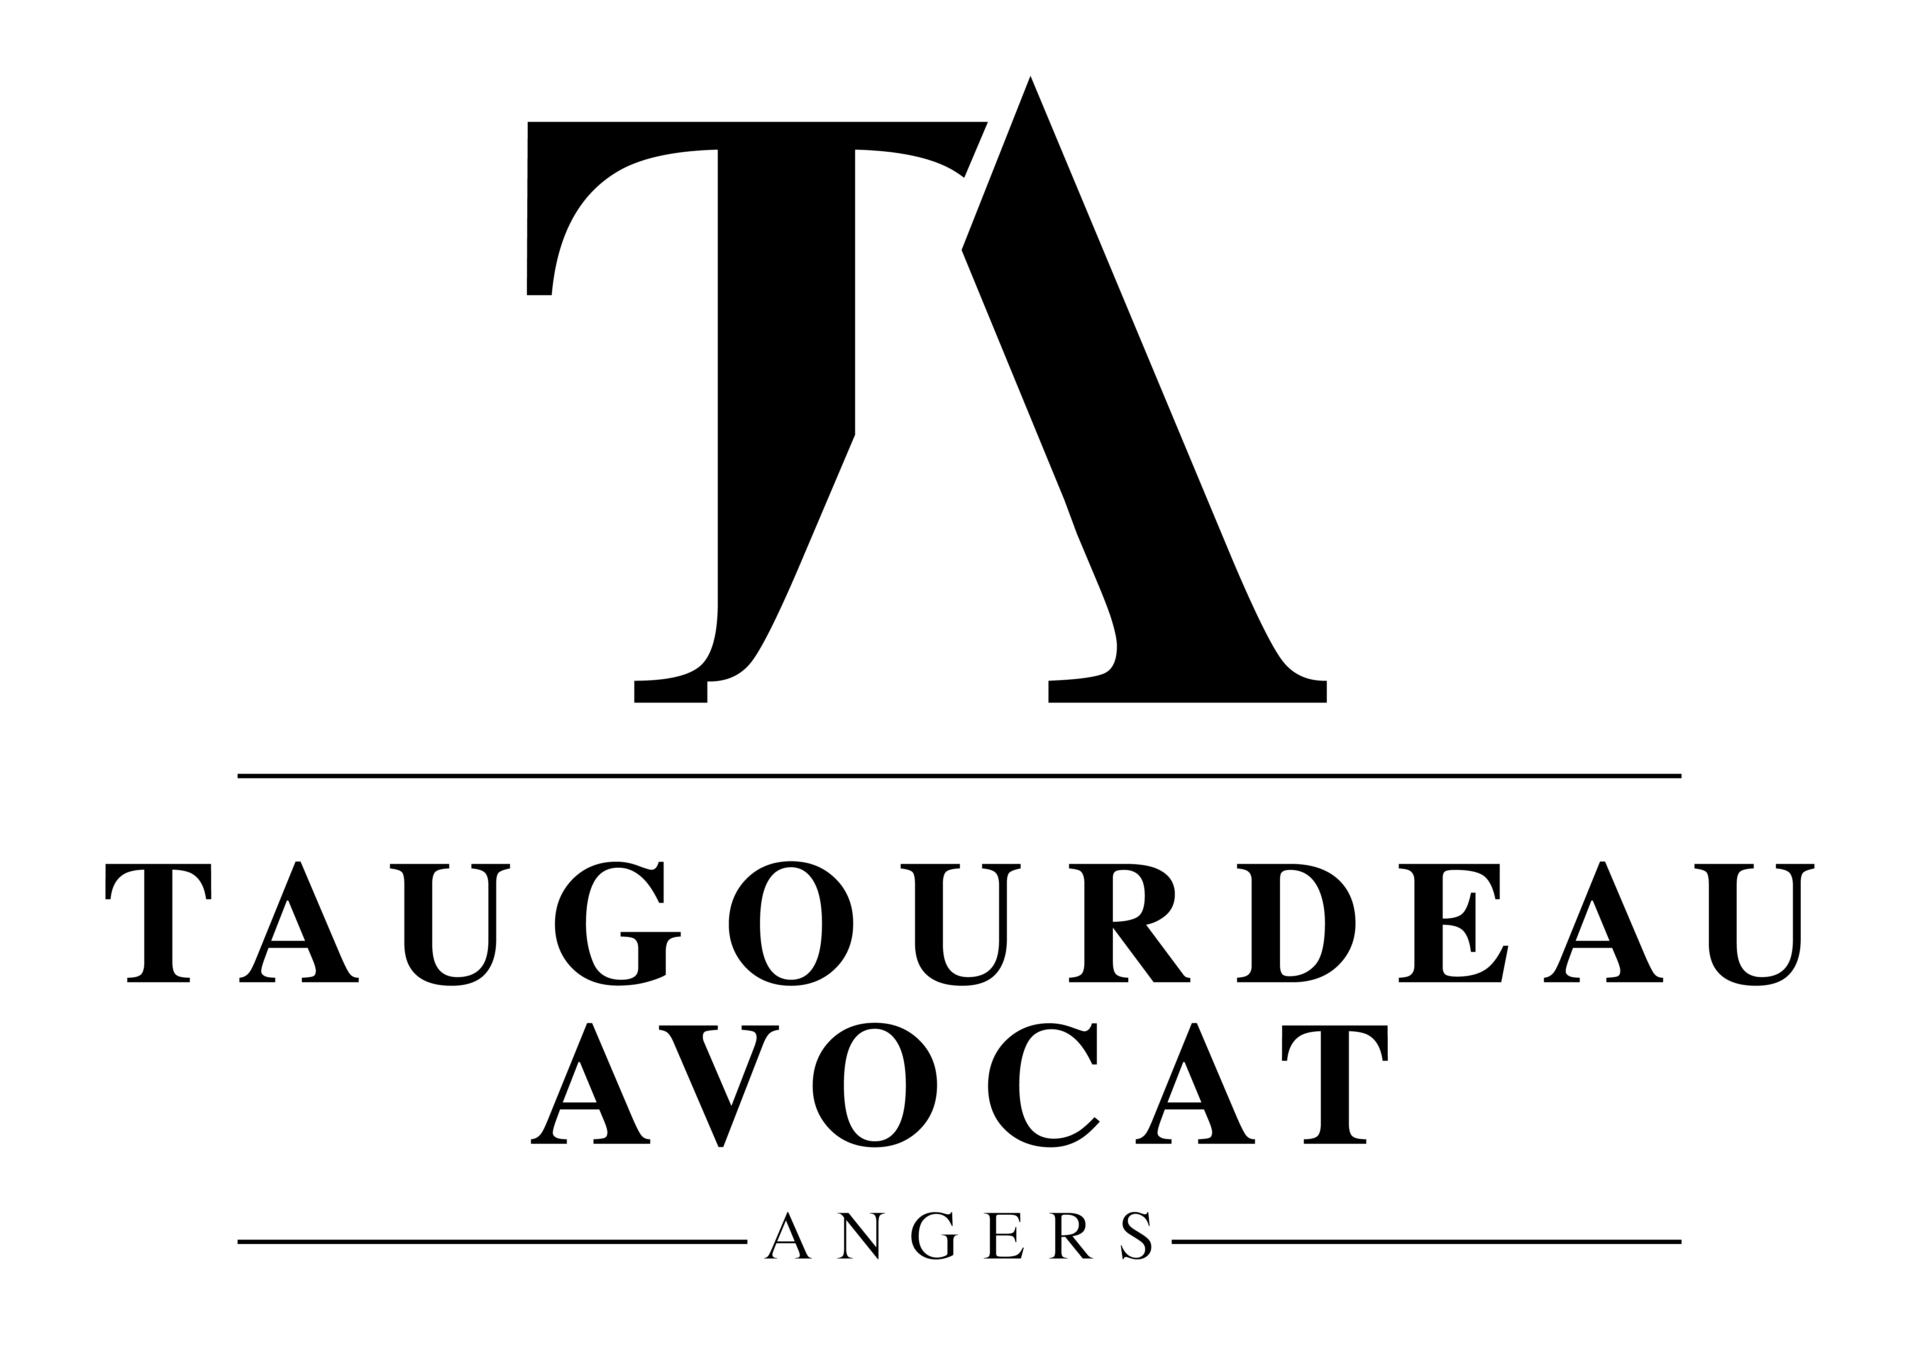 Logo Taugourdeau Avocat